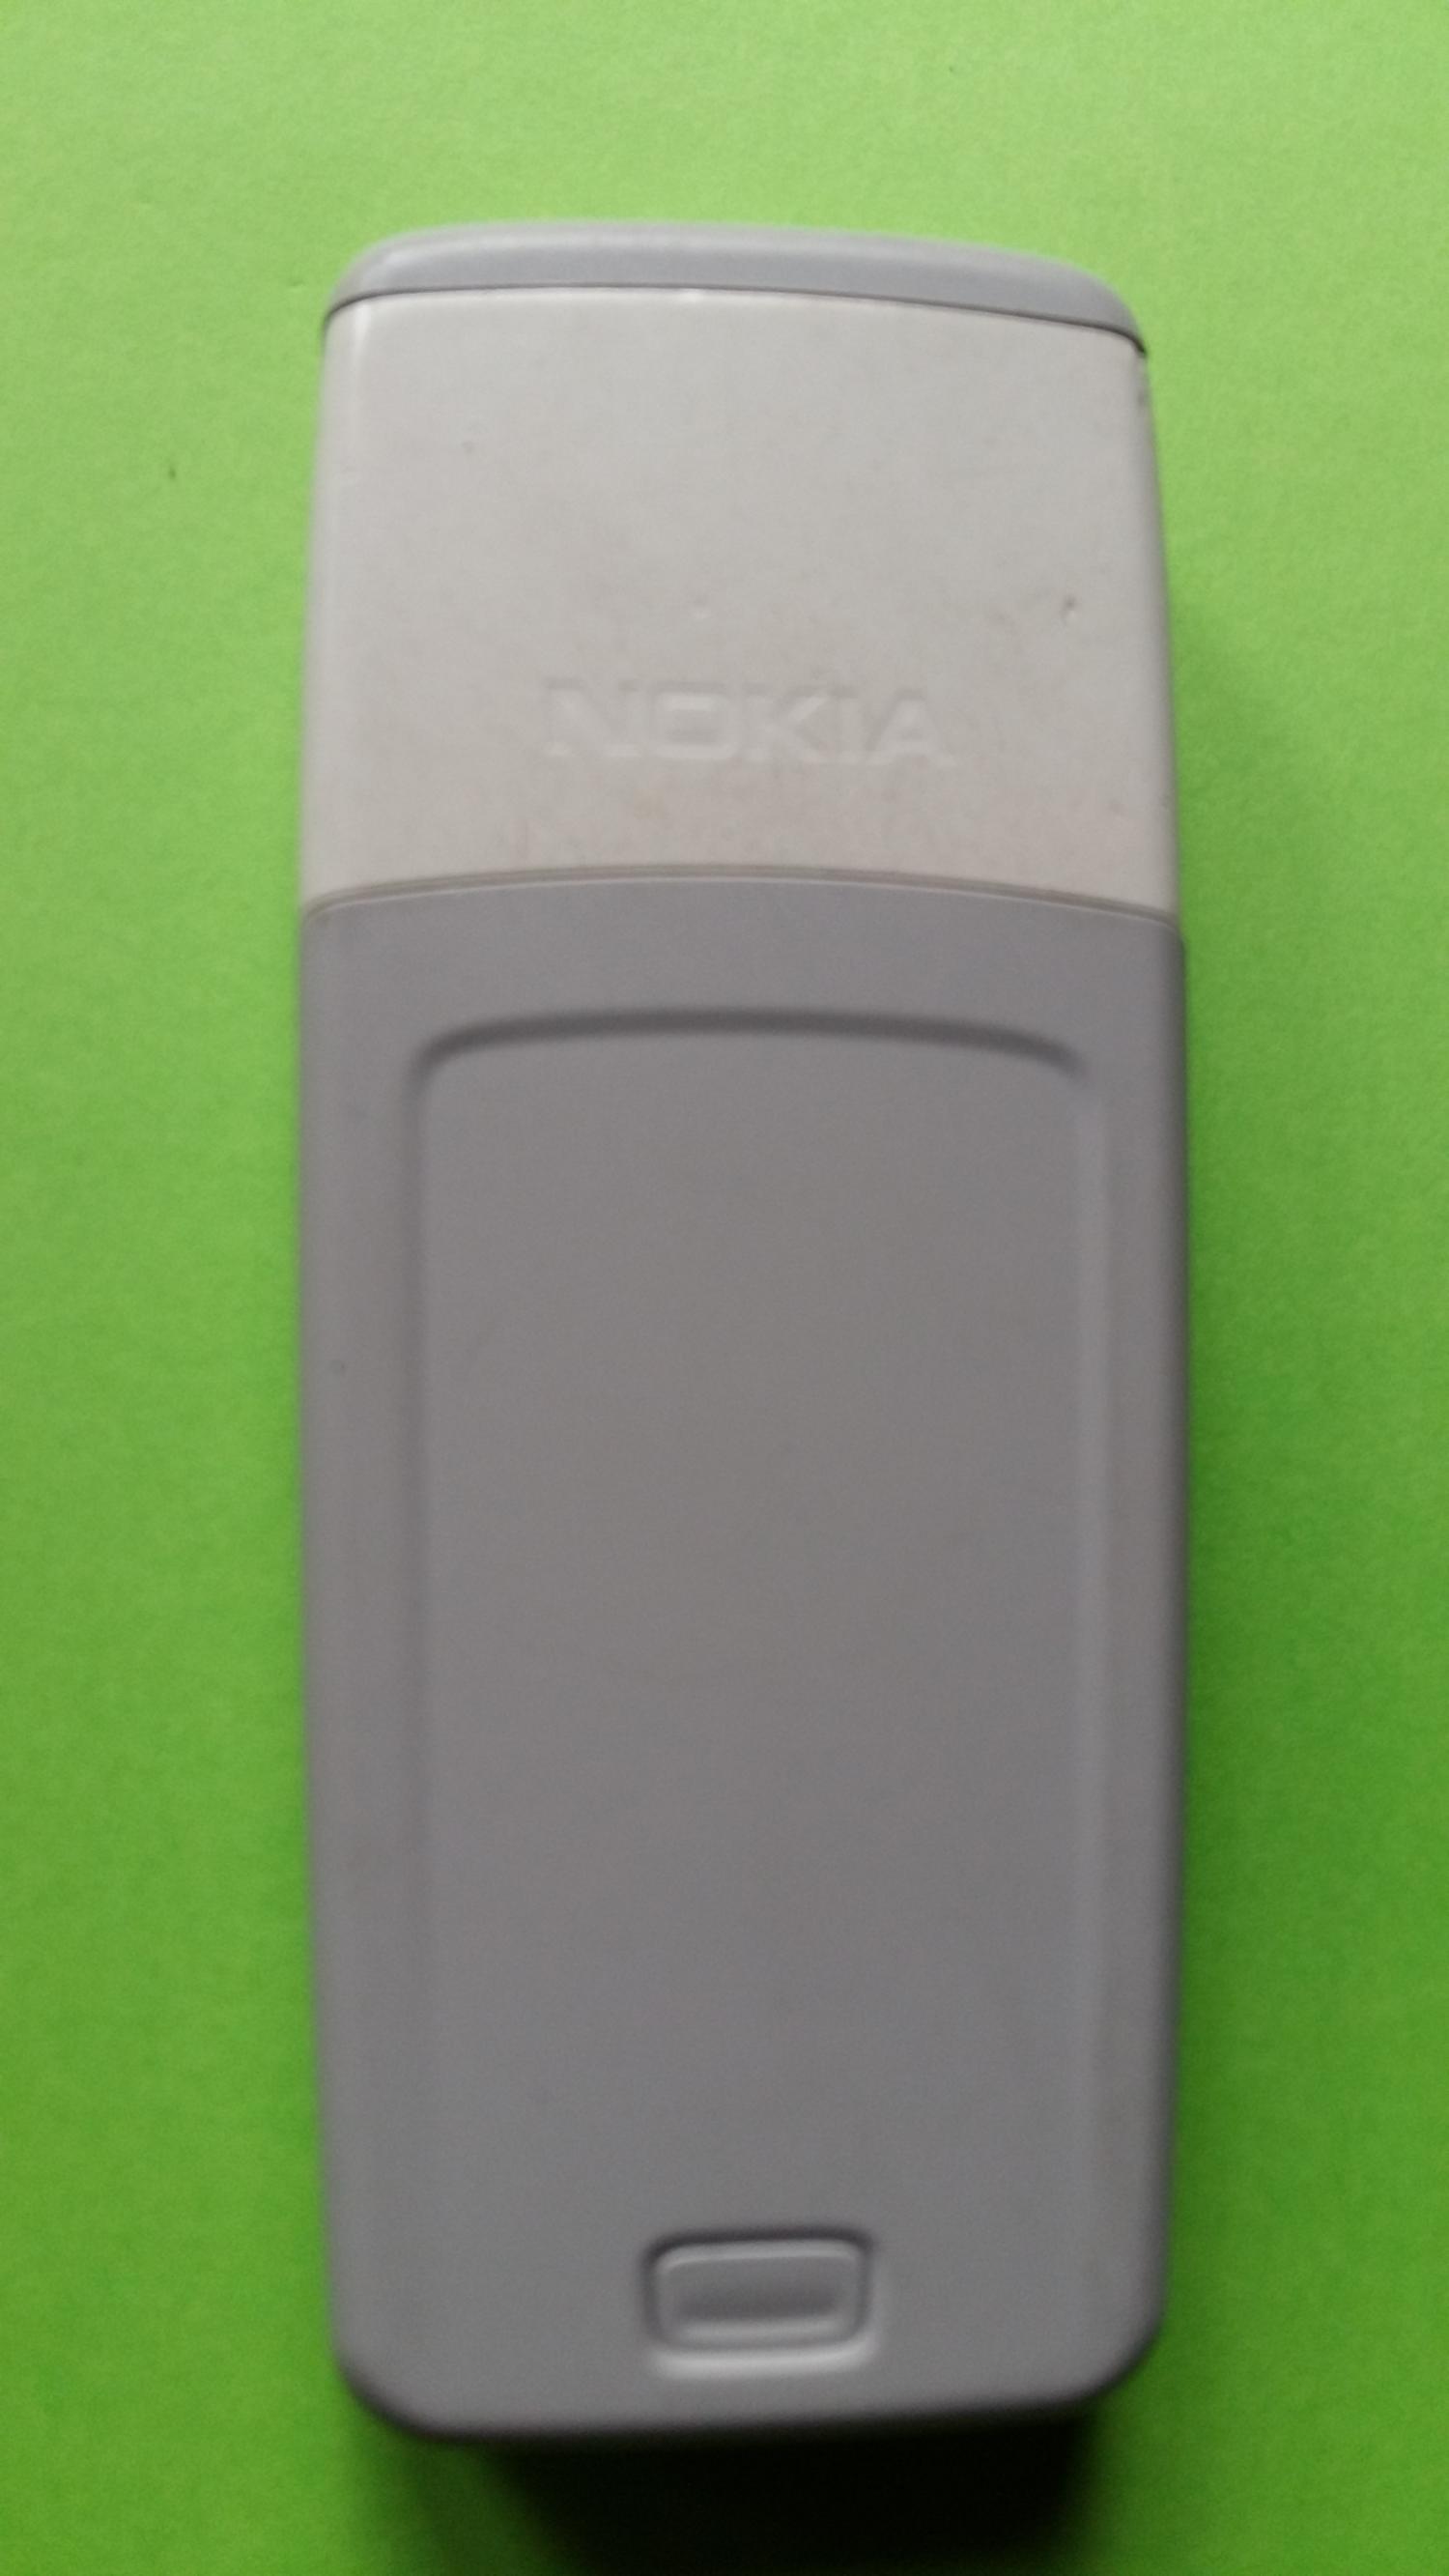 image-7300380-Nokia 1112 (3)2.jpg